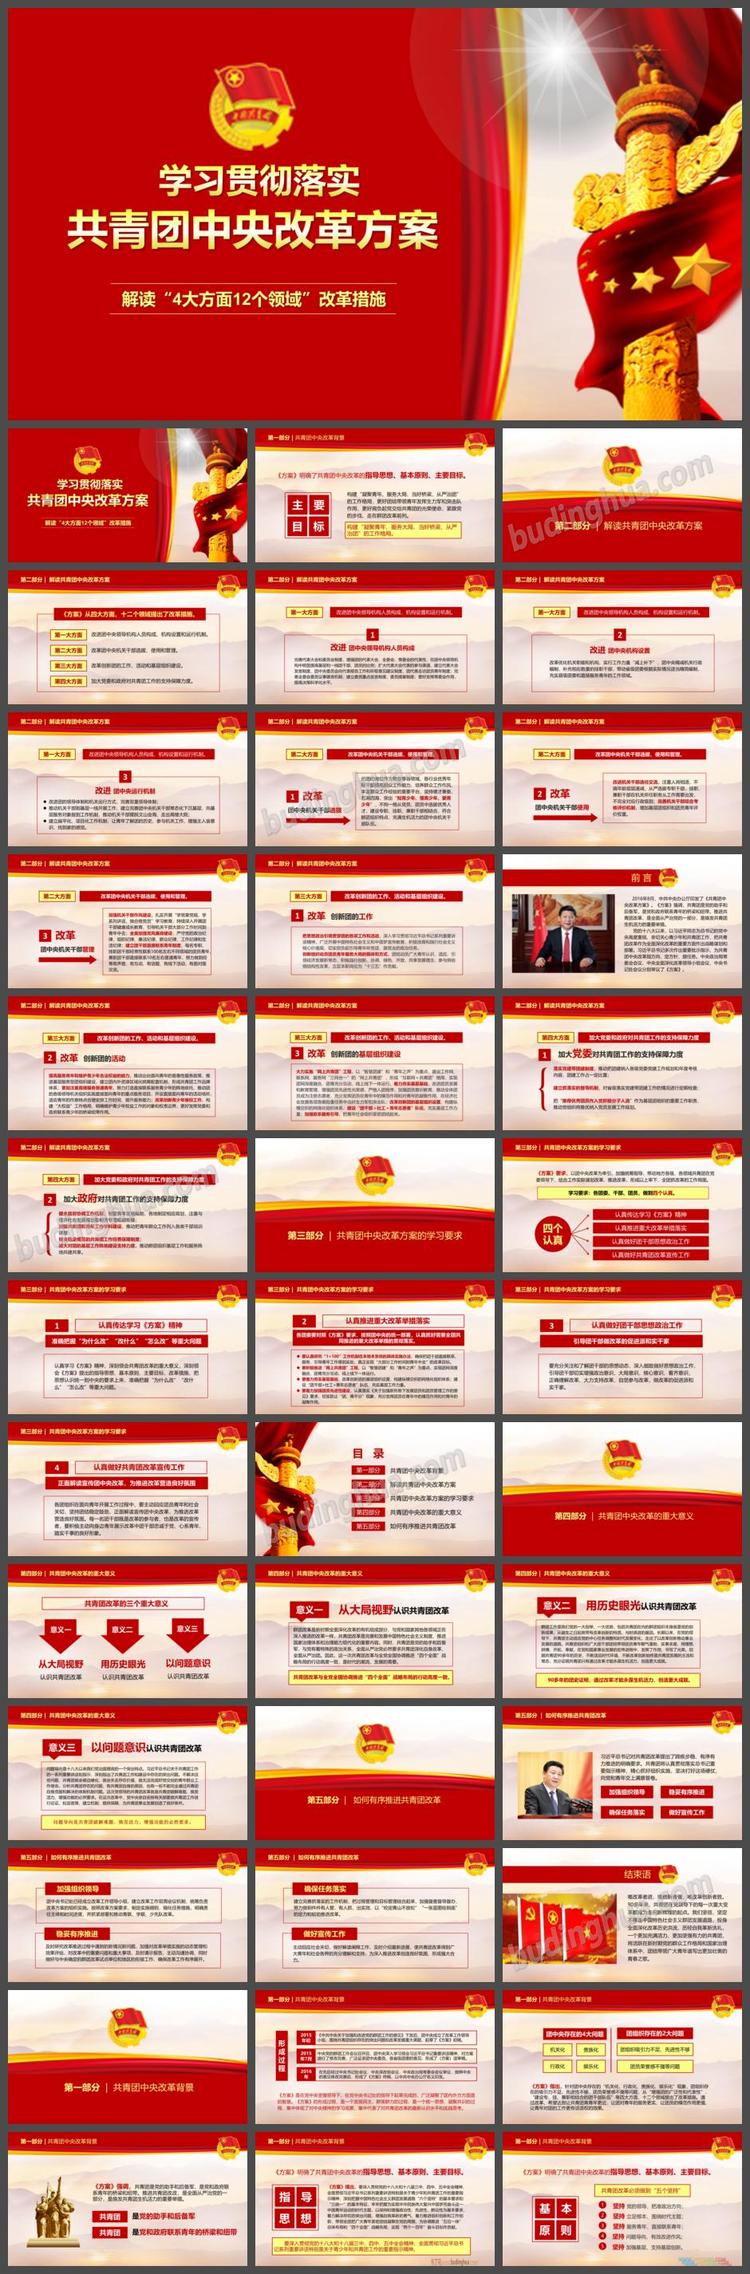 清新好看极致中国梦社会主义核心价值观PowerPoint模板